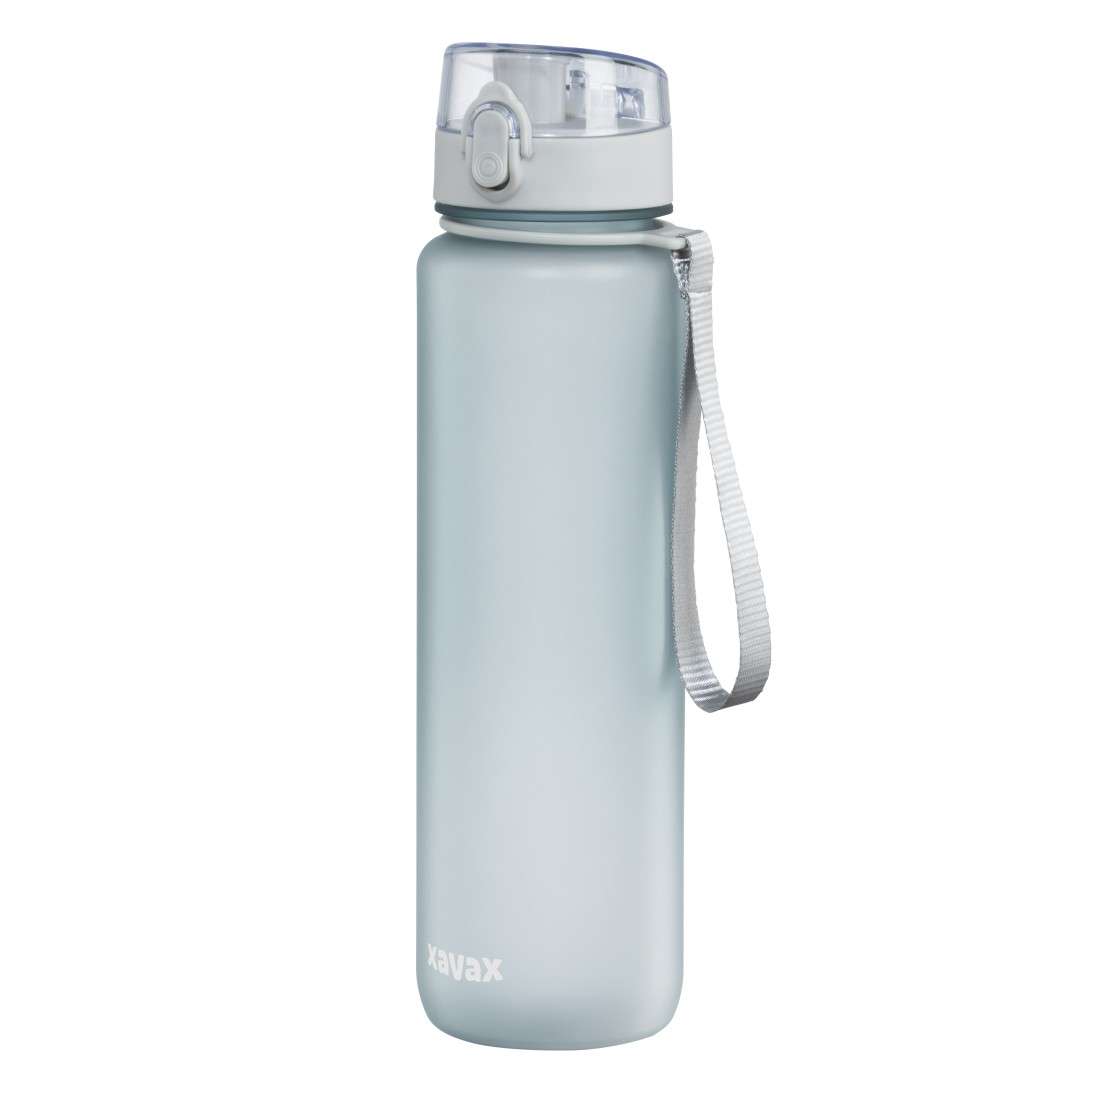 XAVAX Sport-Trinkflasche, 1 l, auslaufsicher, Schlaufe, Einhandverschluss, Blau